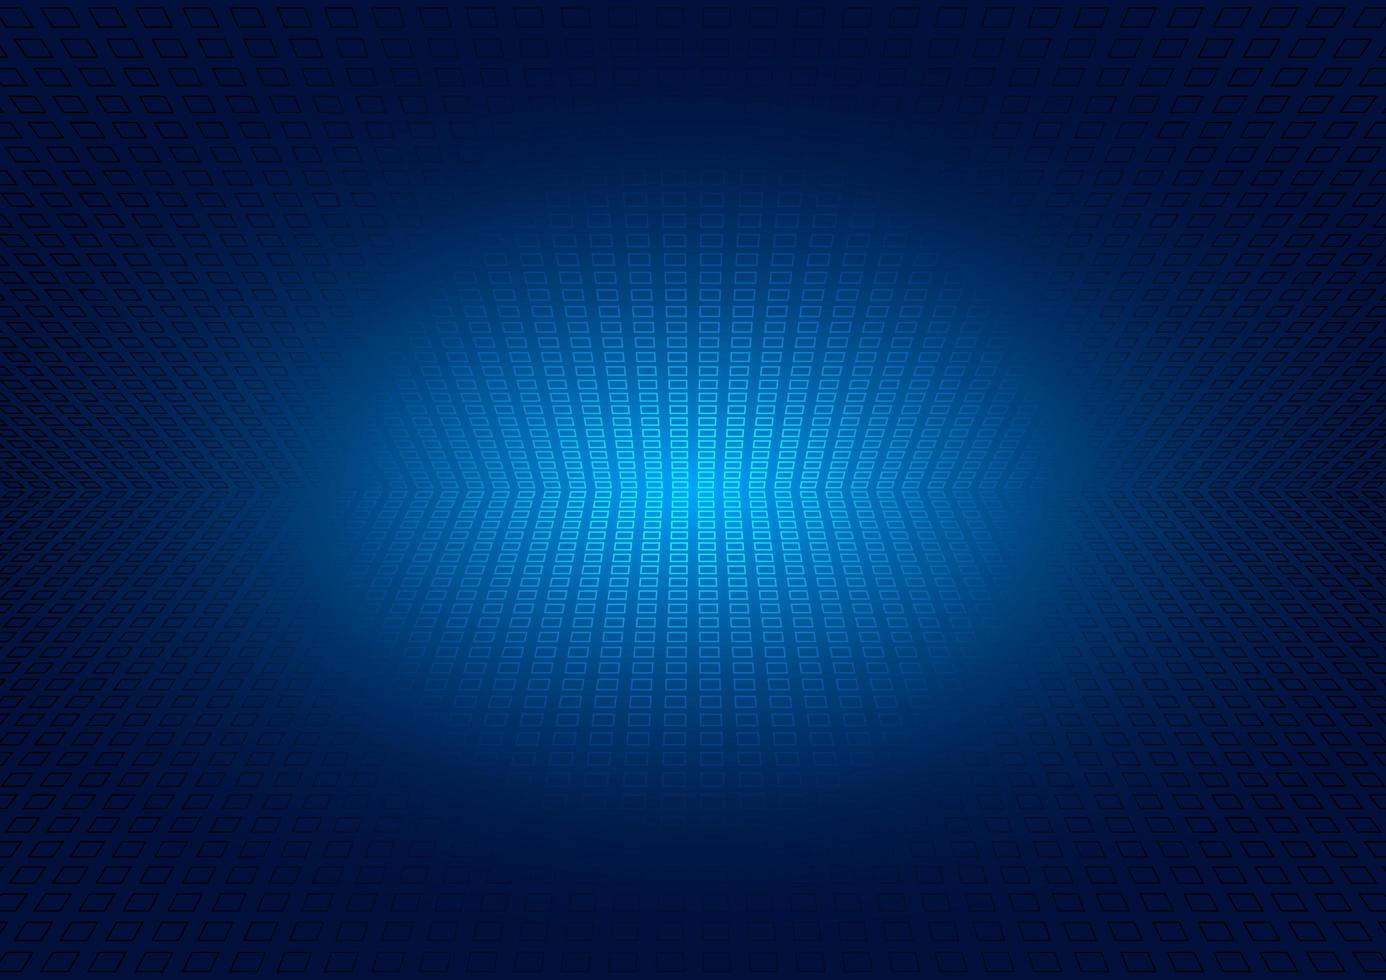 griglia prospettiva astratta su sfondo blu incandescente vettore